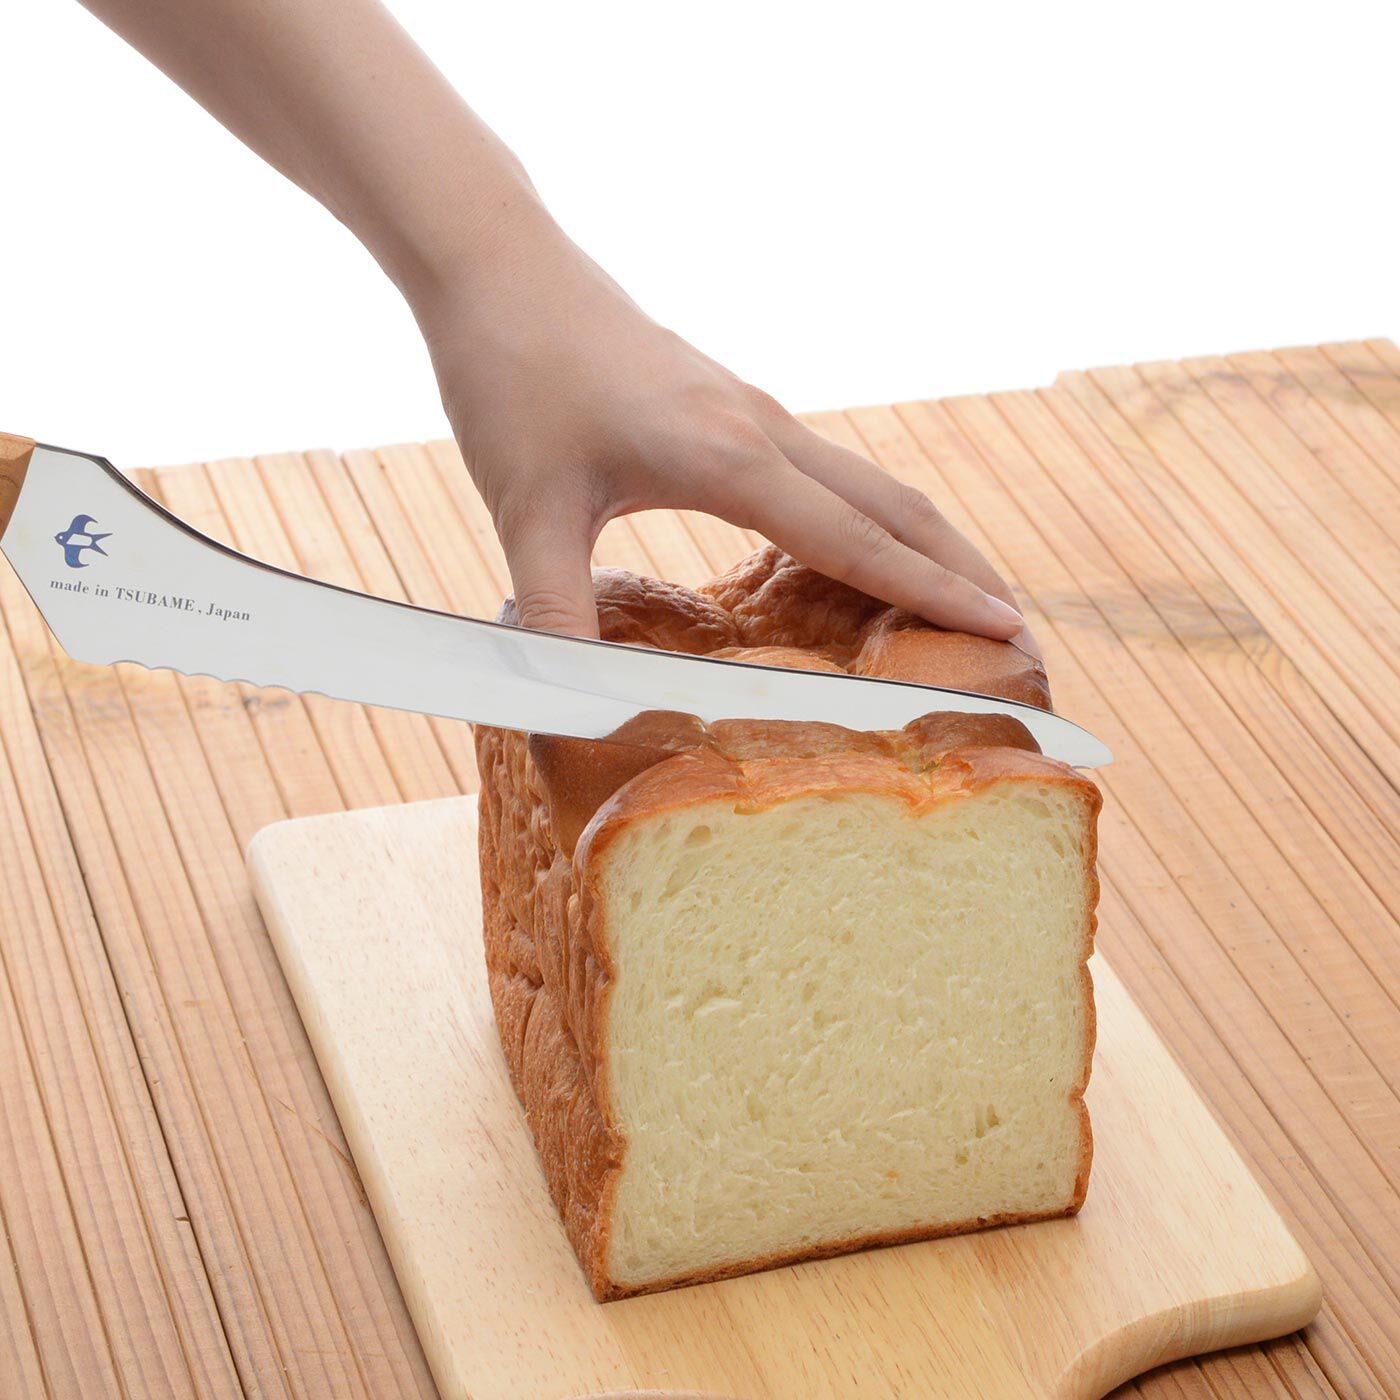 フェリシモの雑貨 Kraso|波刃と直刃がポイント！ 硬くてもやわらかくてもきれいに切れるパンナイフ|やわらかいパンをつぶしてしまいがちな最初に、波刃がパンの端にスッと入ります